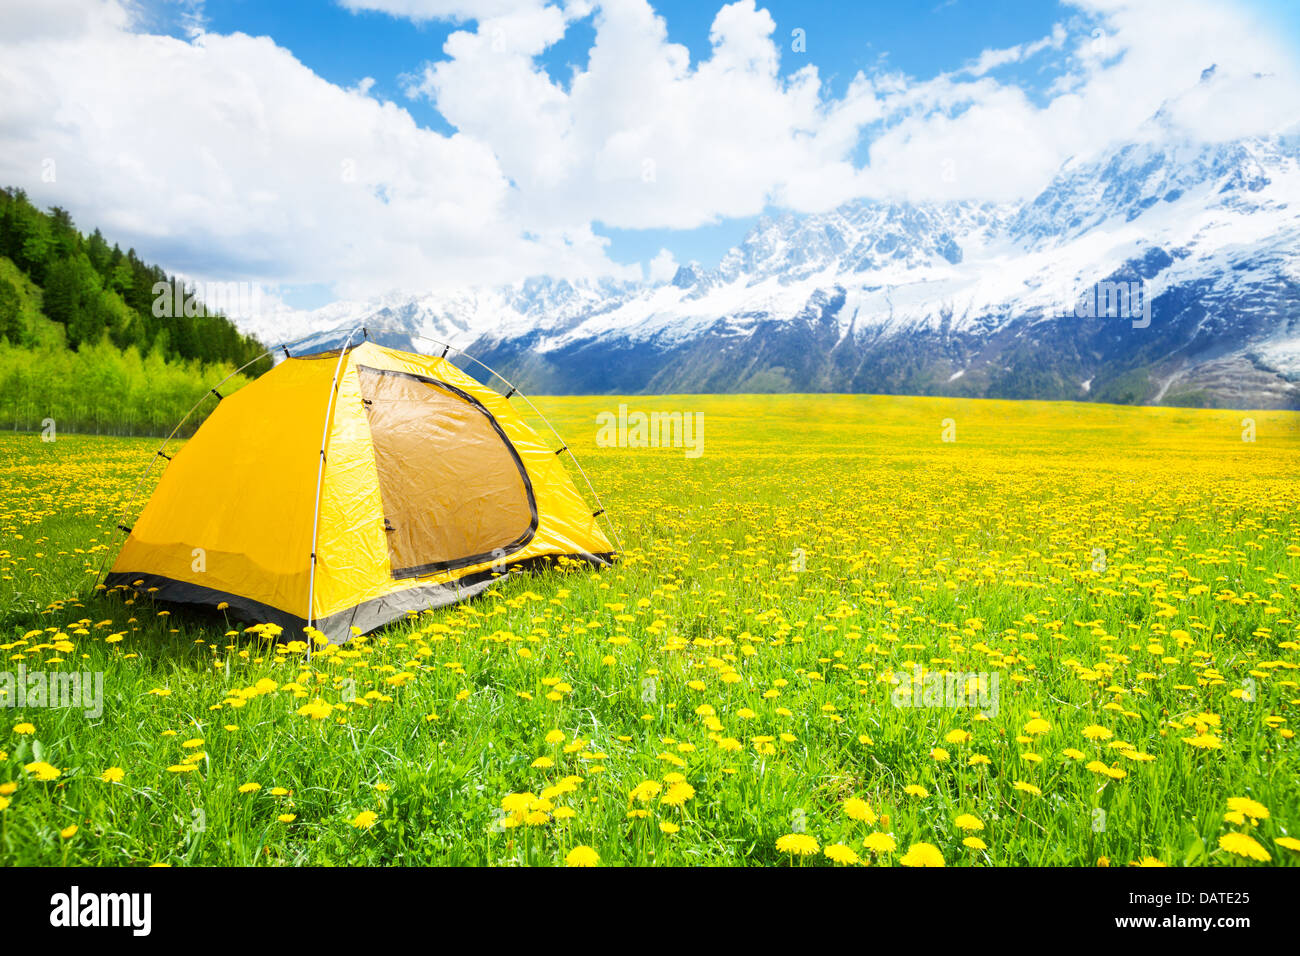 Tienda de campaña, en el bonito campo jaramago amarillo con las montañas al fondo Foto de stock